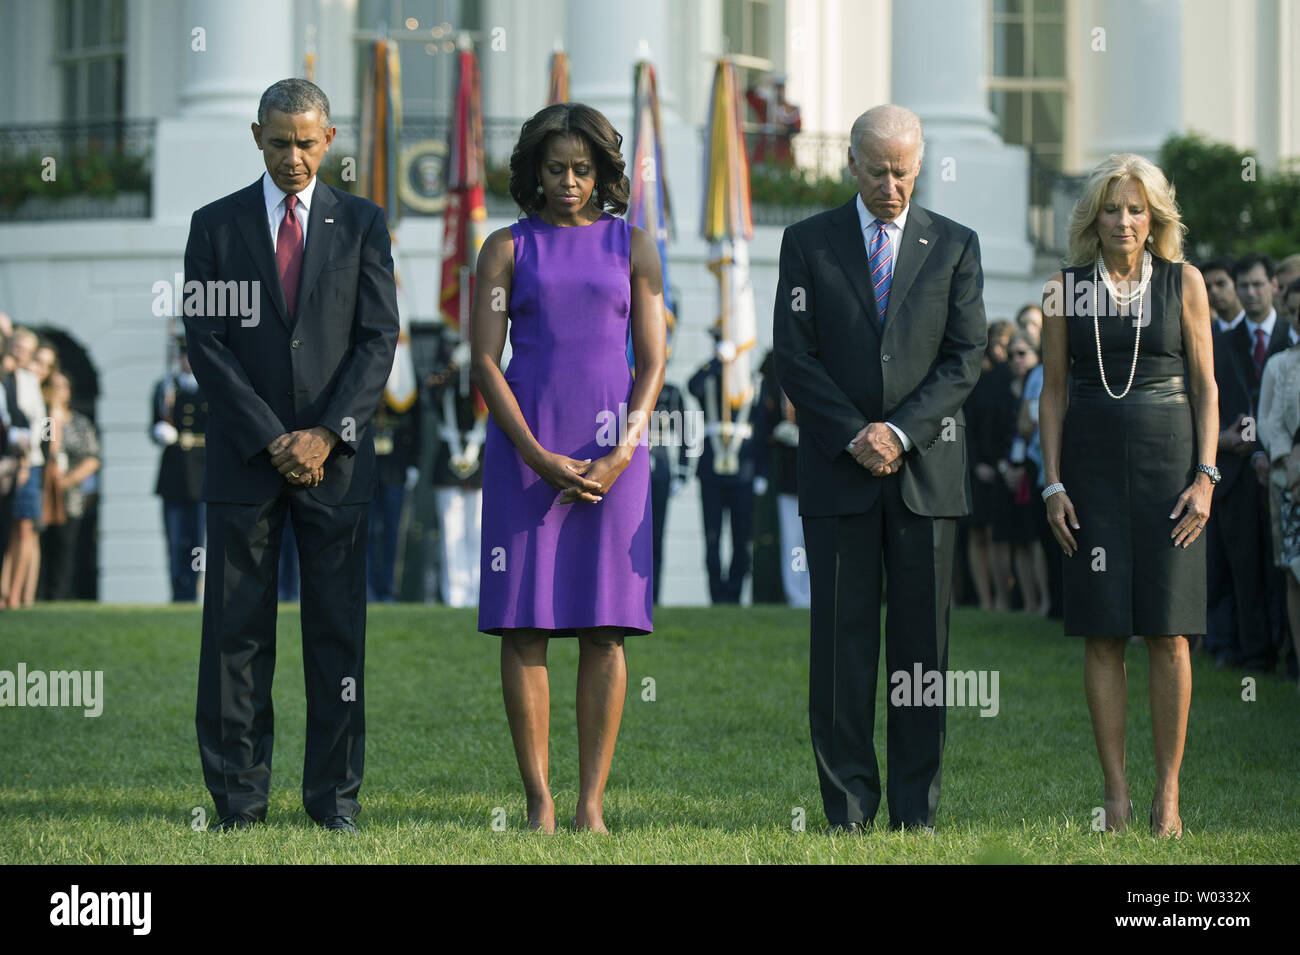 Präsident Barack Obama (L), der First Lady Michelle Obama, Vizepräsident Joe Biden, Dr. Jill Biden und Personal des Weißen Hauses beobachten, ein Moment der Stille, für den 12. Jahrestag der Terroranschläge vom 11, im Weißen Haus in Washington, D.C. am 11. September 2013. UPI/Kevin Dietsch Stockfoto